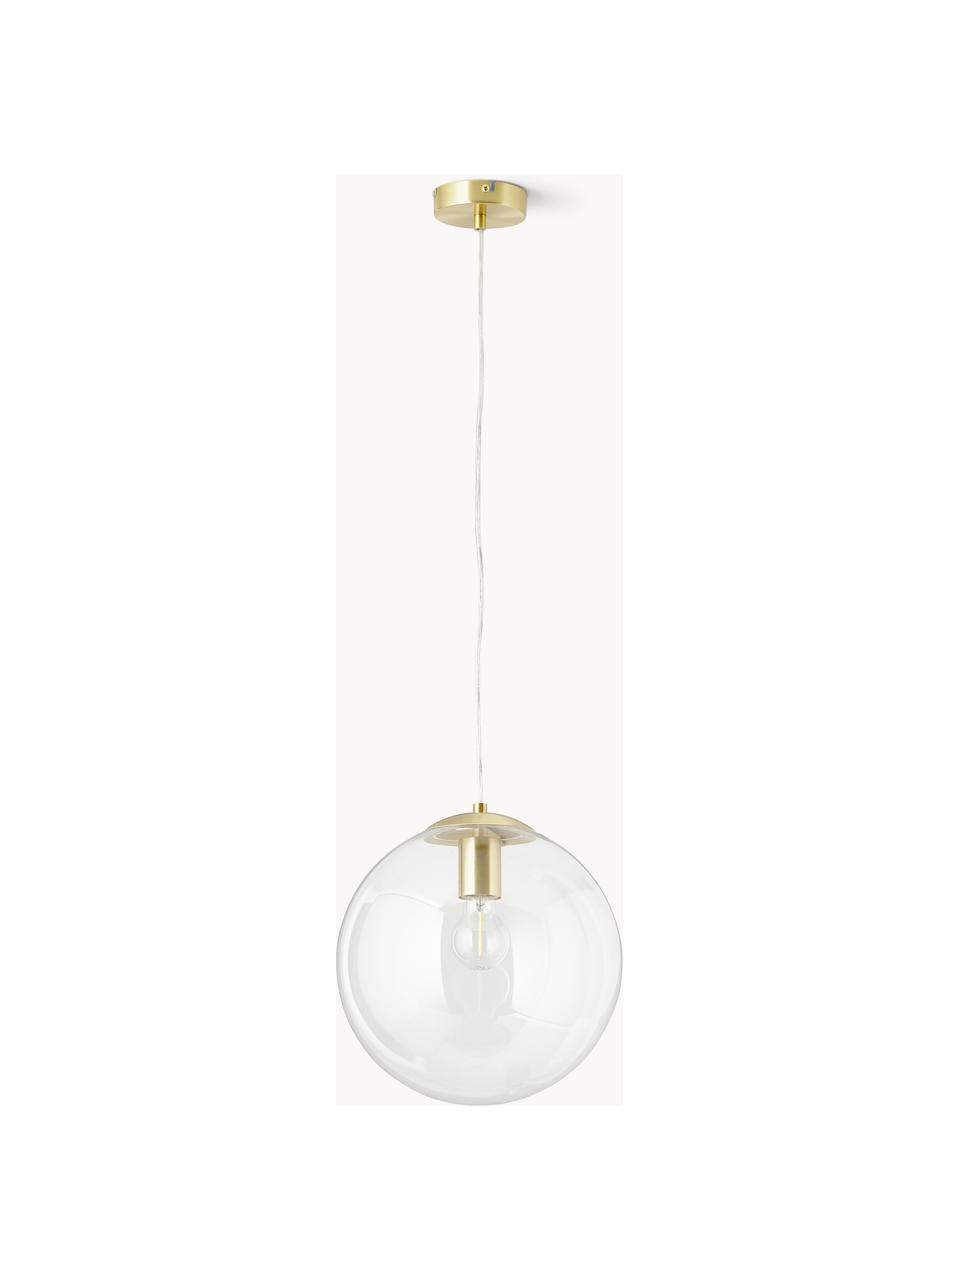 Lámpara de techo Bao, Pantalla: vidrio, Anclaje: metal galvanizado, Cable: cubierto en tela, Transparente, dorado, Ø 30 cm